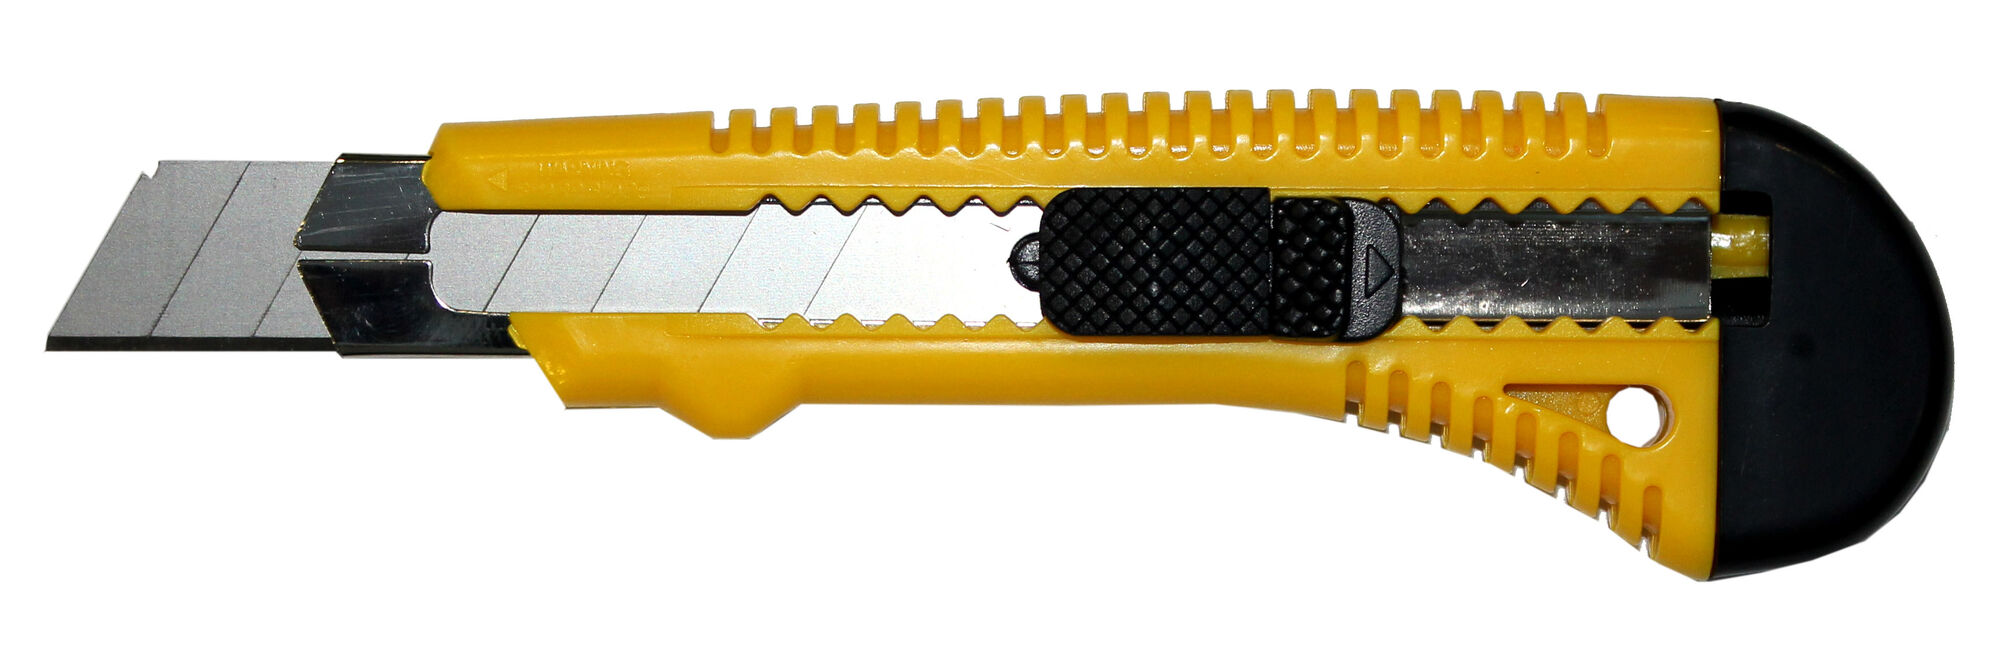 Нож Bohrer с выдвижными лезвиями 18 мм усиленный с металл. направляющей (72/12/3) (шт) 43118002